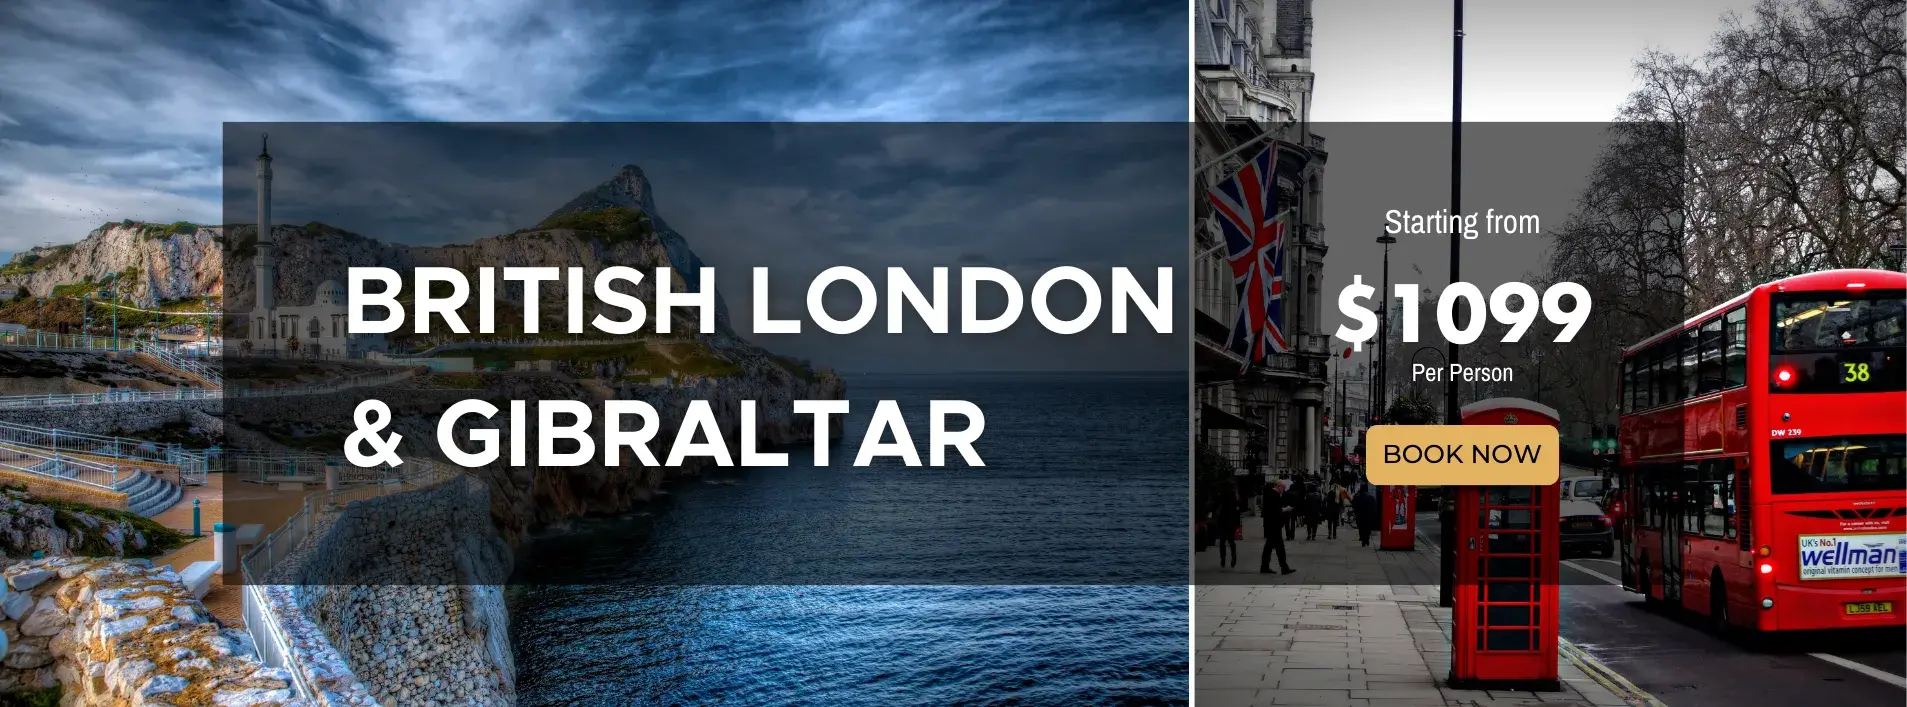 Best of British London & Gibraltar W/Air